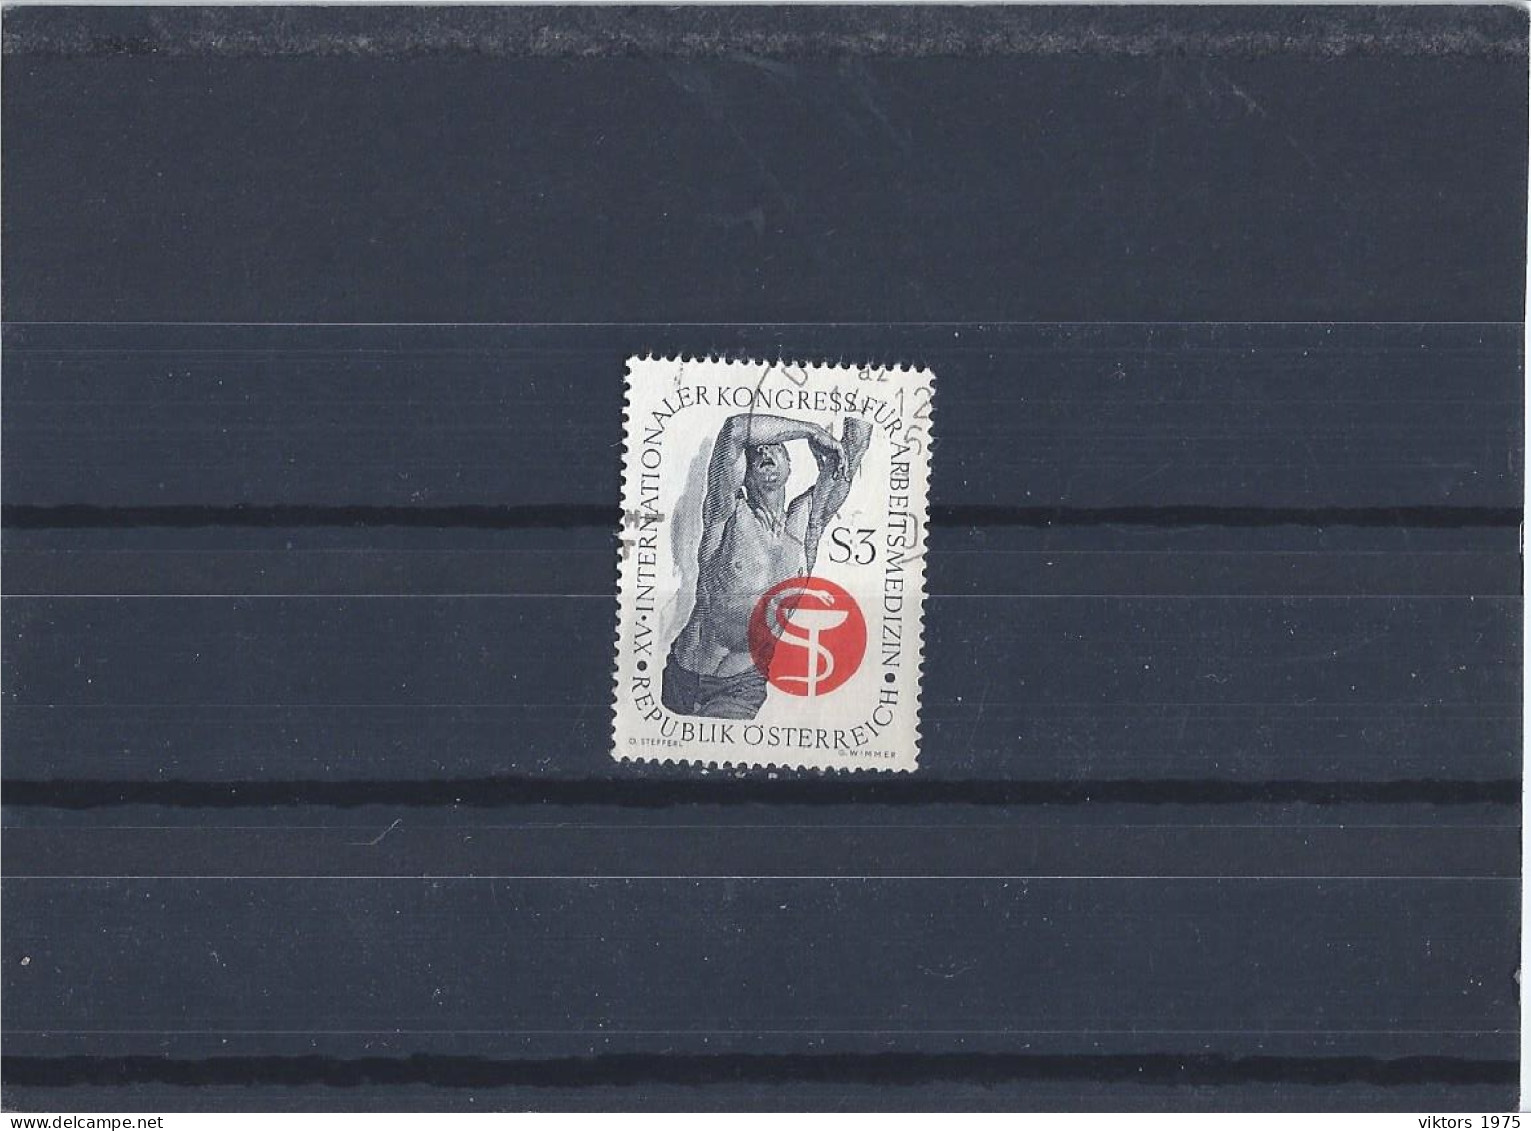 Used Stamp Nr.1217 In MICHEL Catalog - Usati